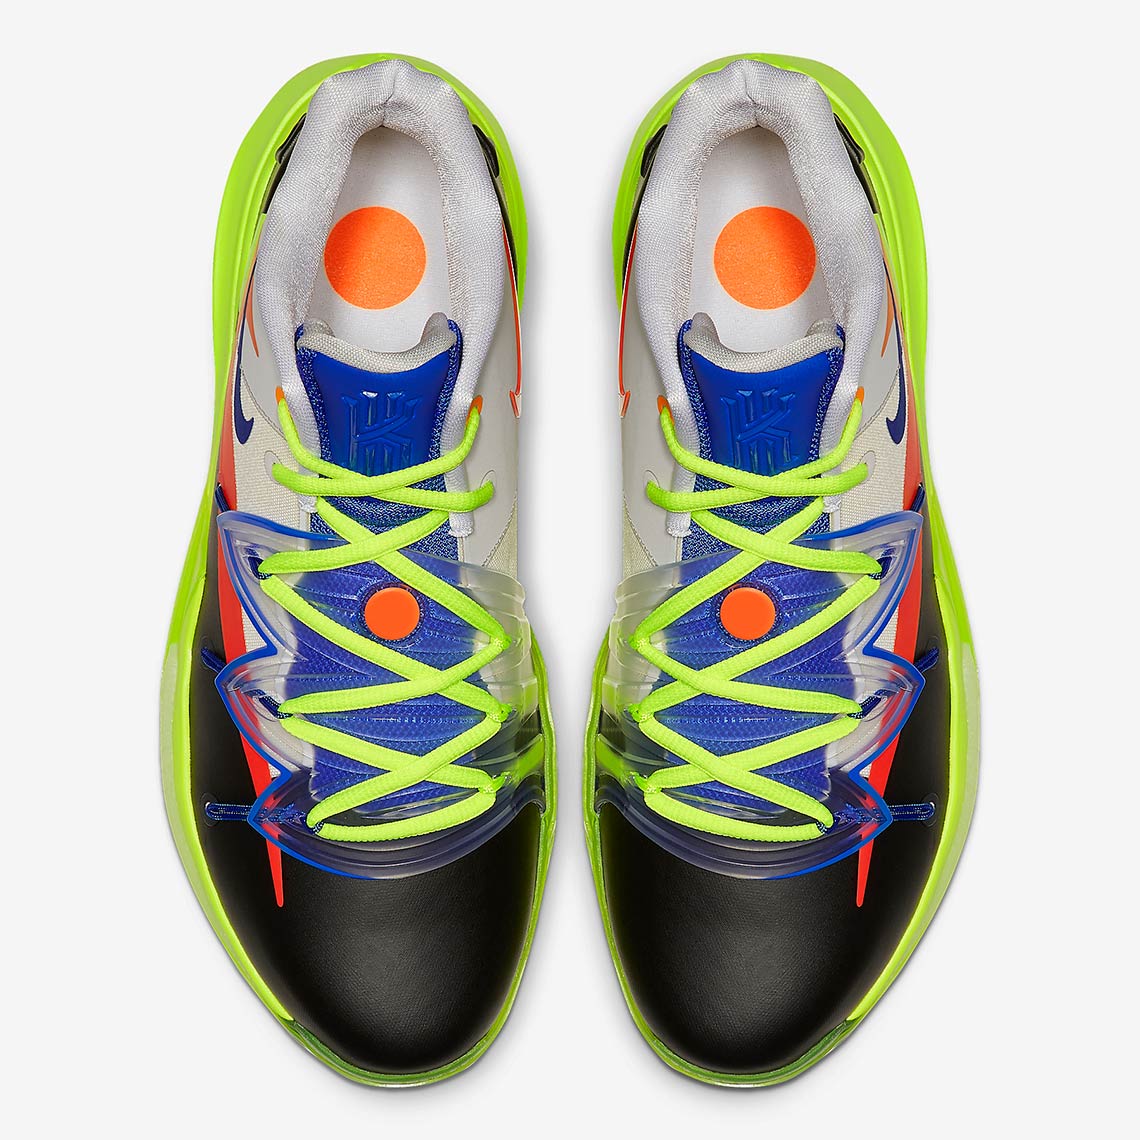 ROKIT Nike Kyrie 5 CJ7899-900 Release Date | SneakerFiles